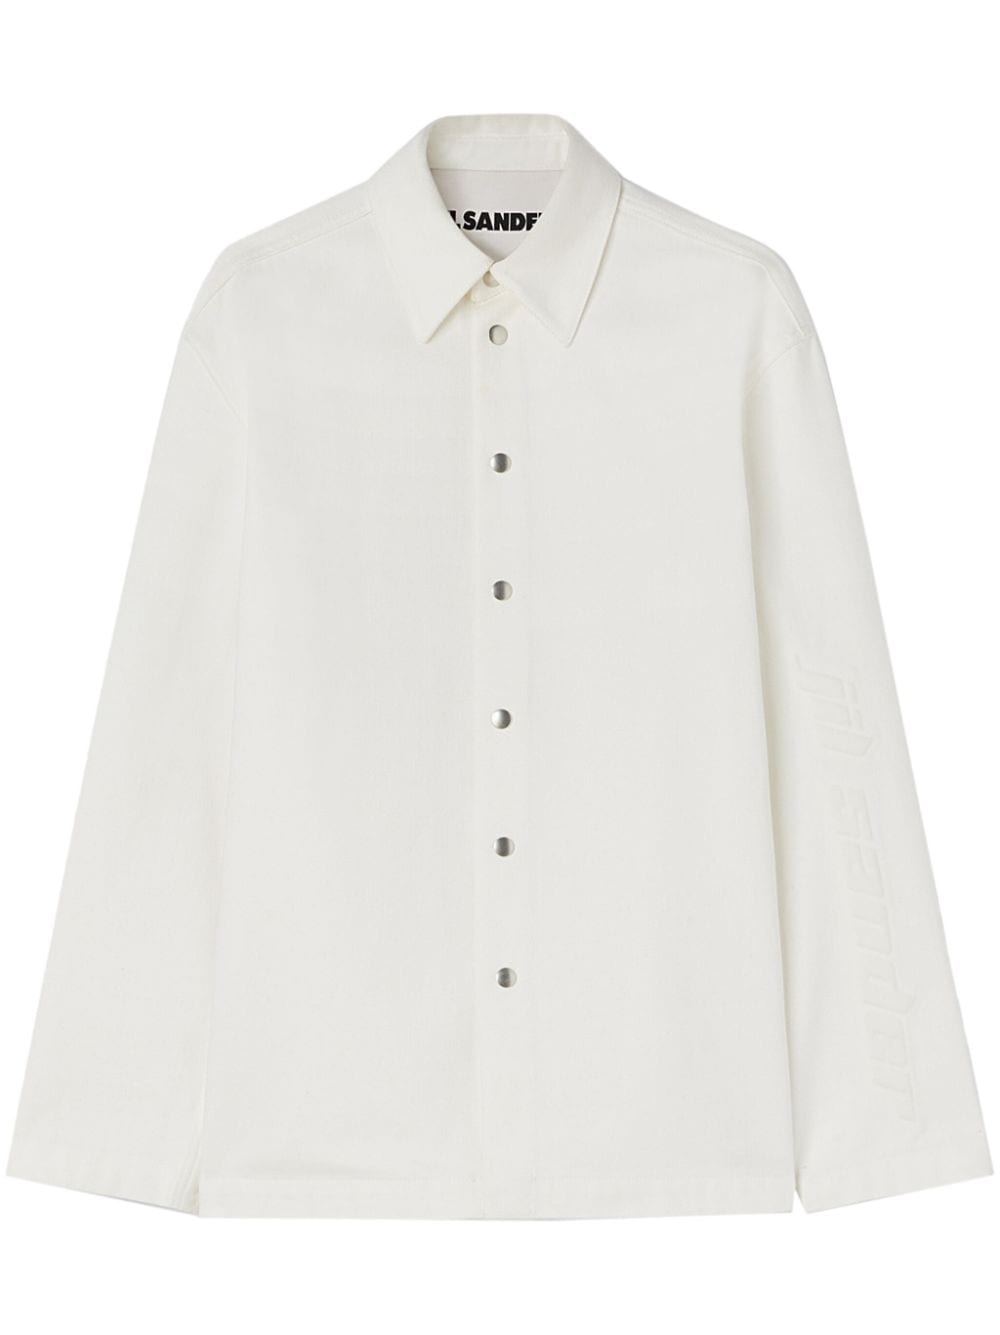 JIL SANDER Organic Cotton Denim Shirt for Men in White